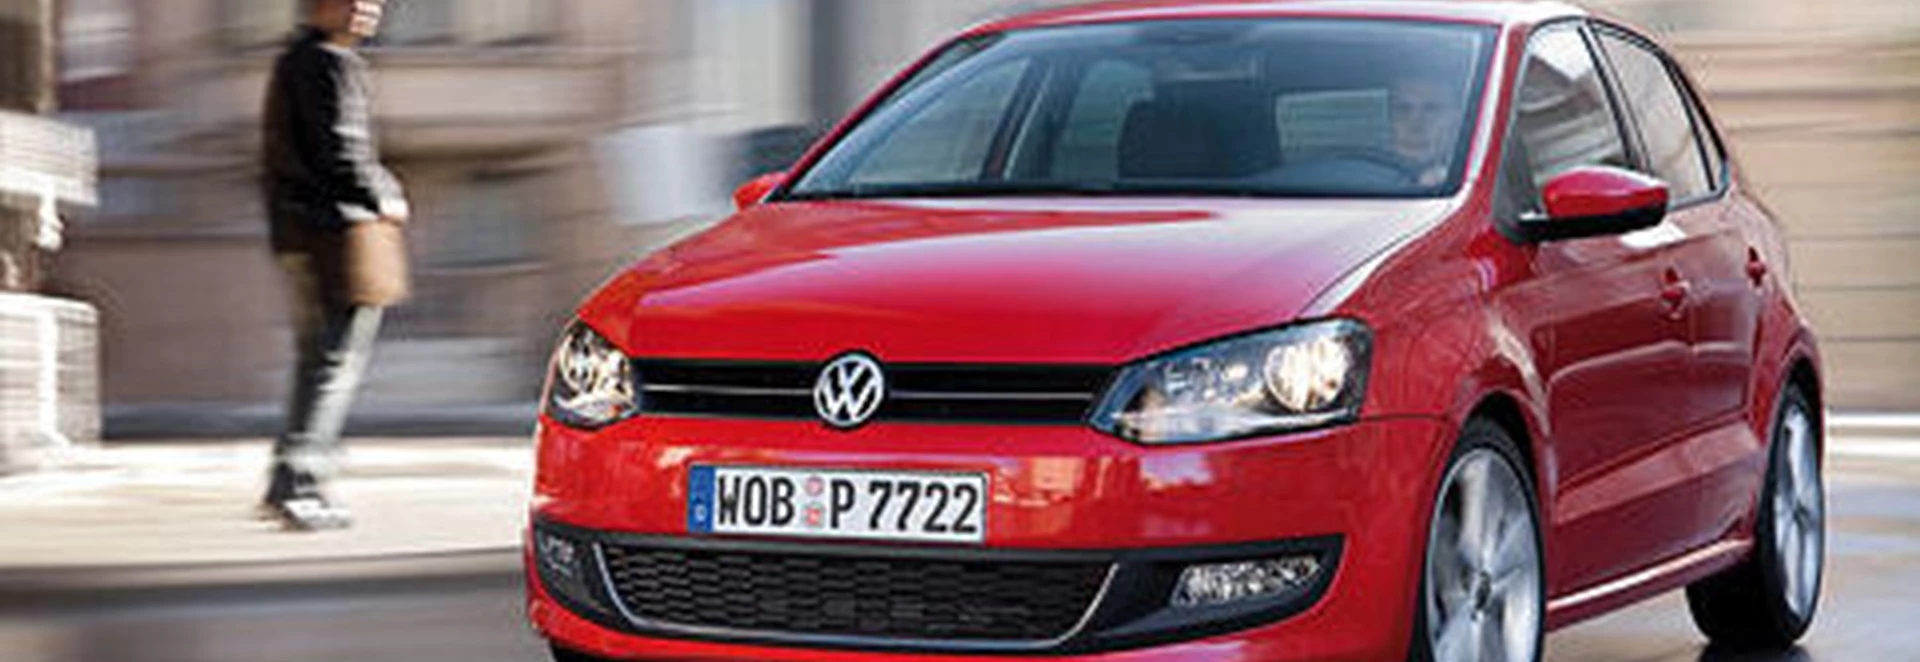 Volkswagen Polo 1.2 70PS SE Five-Door (2009) 